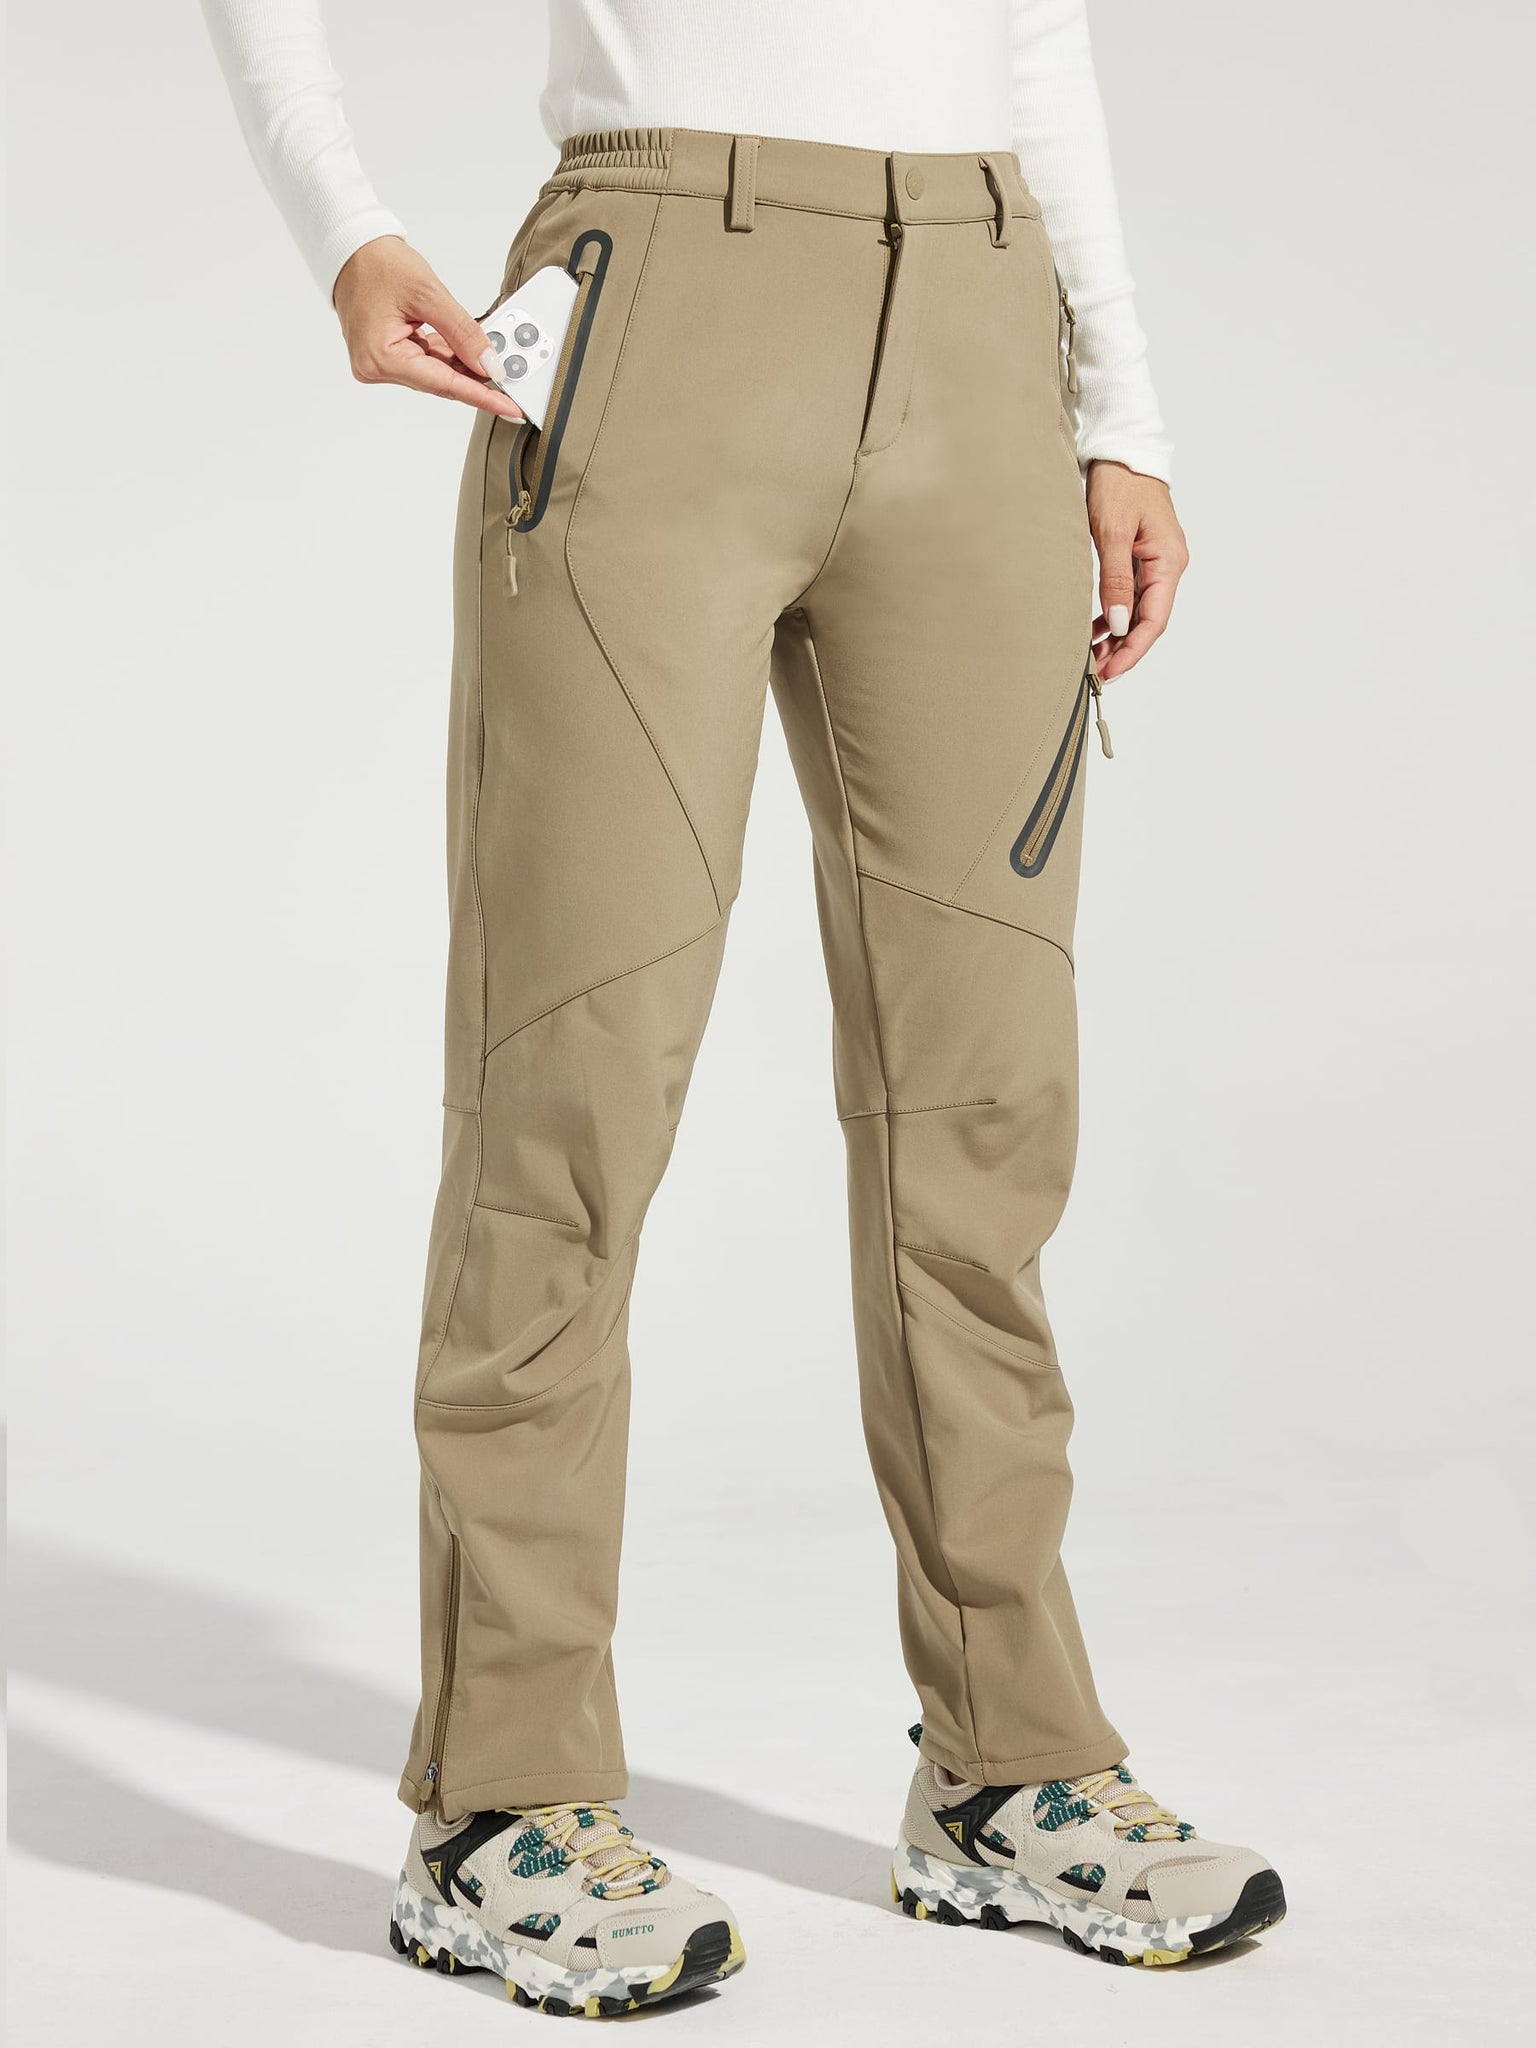 Women's Fleece Lined Snow Cargo Pants_Khaki_model1